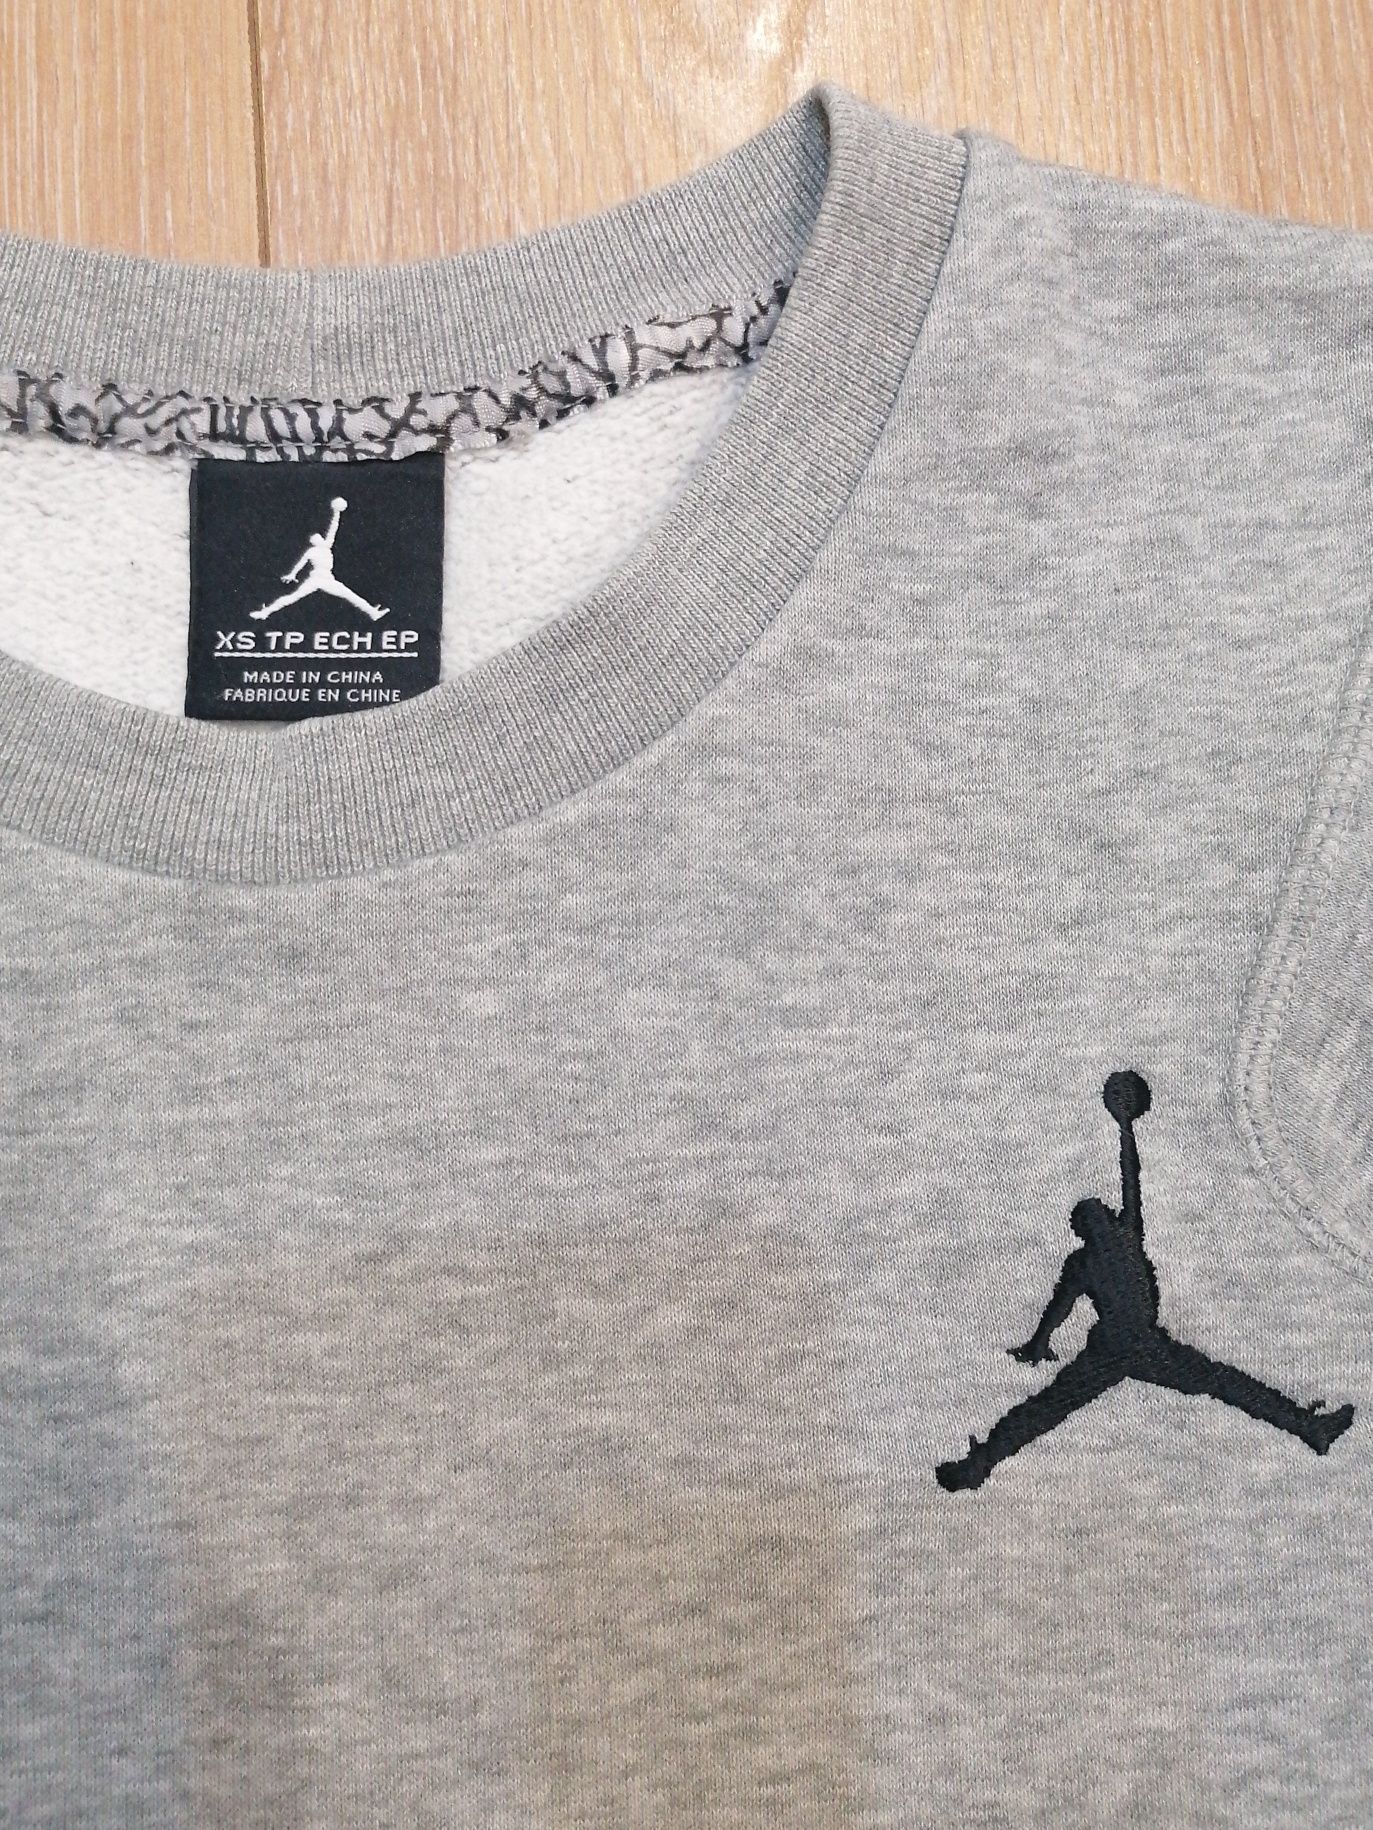 Nike air Jordan men's